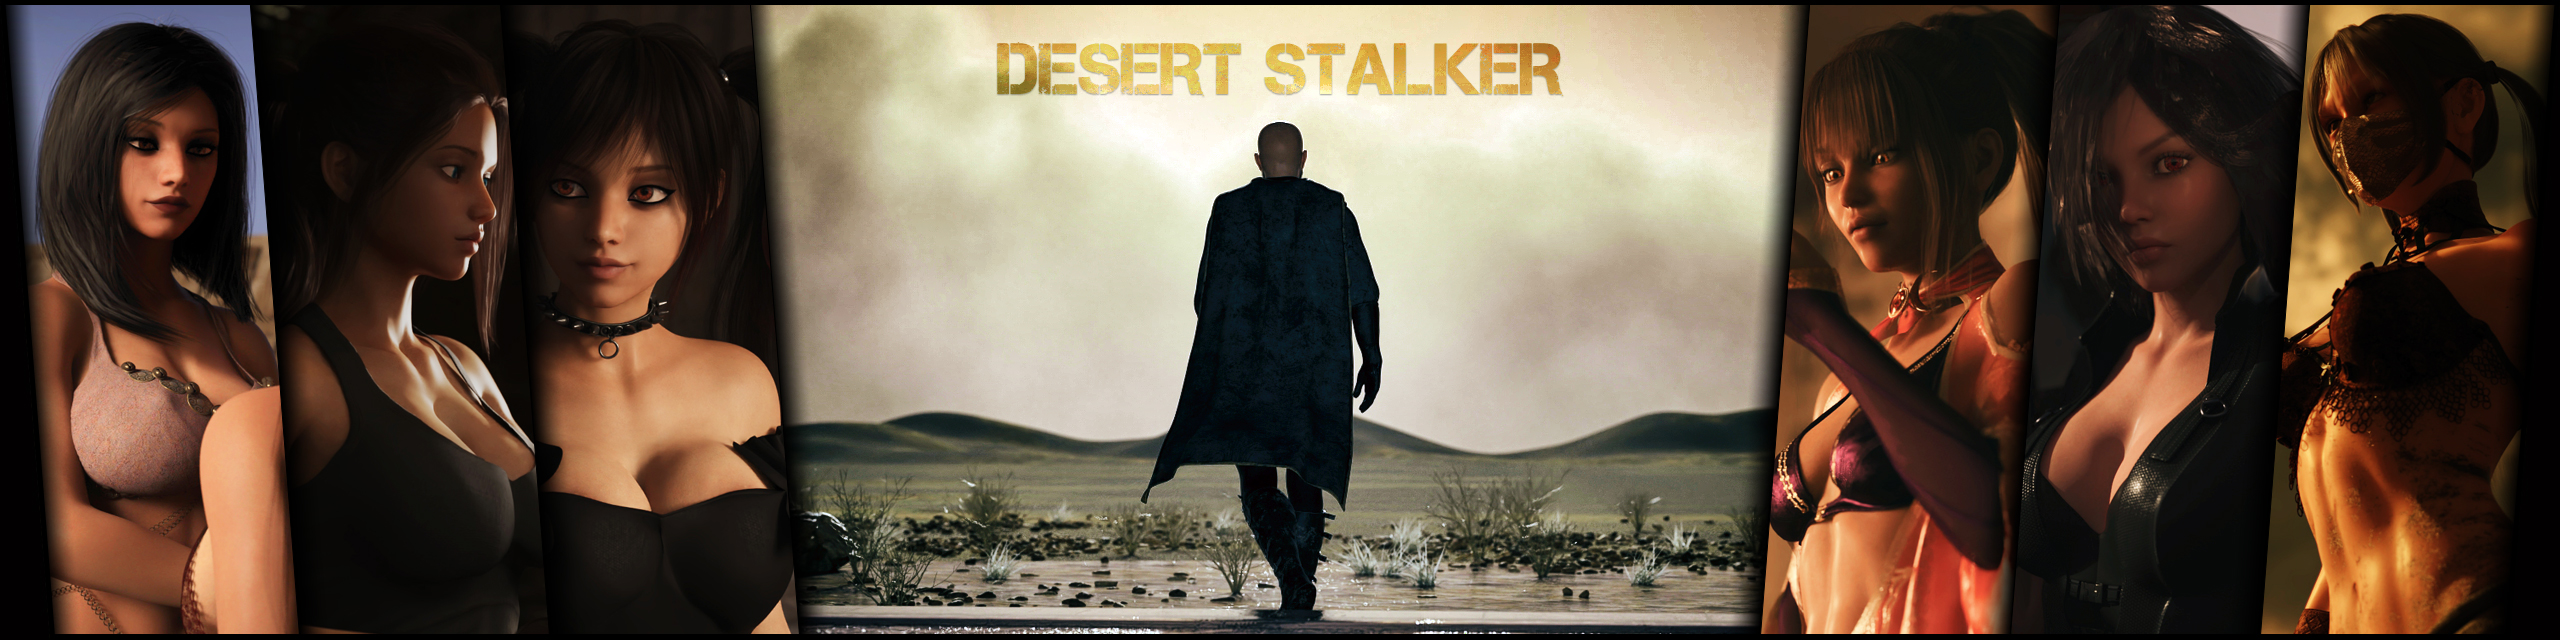 [18+ EN] Desert Stalker (v0.14d) – Trở Thành Thợ Săn Sa Mạc Lần Theo Vết Tích Cổ Xưa Cùng Những Cô Nàng Nóng Bỏng | Android, PC